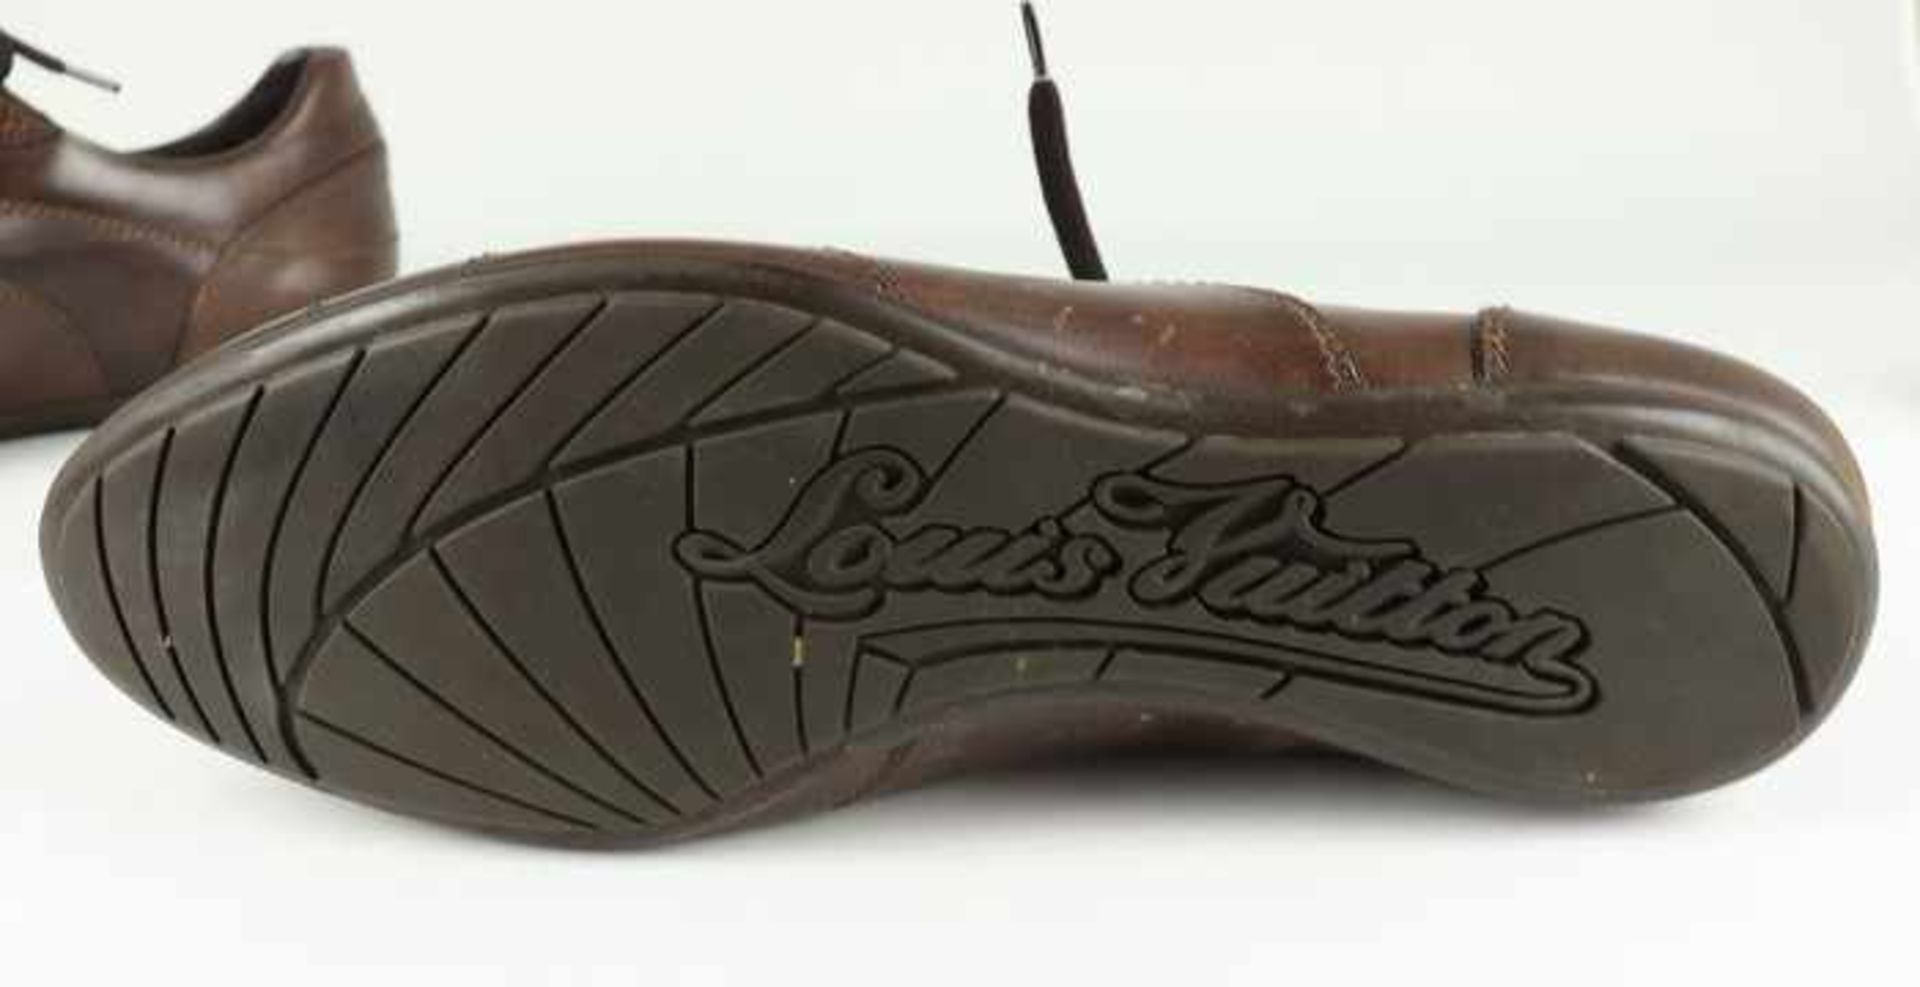 Louis Vuitton - HerrenschuheItalien, braunes Leder, sportliches Modell, OK, mit Staubbeutel u. - Bild 5 aus 8